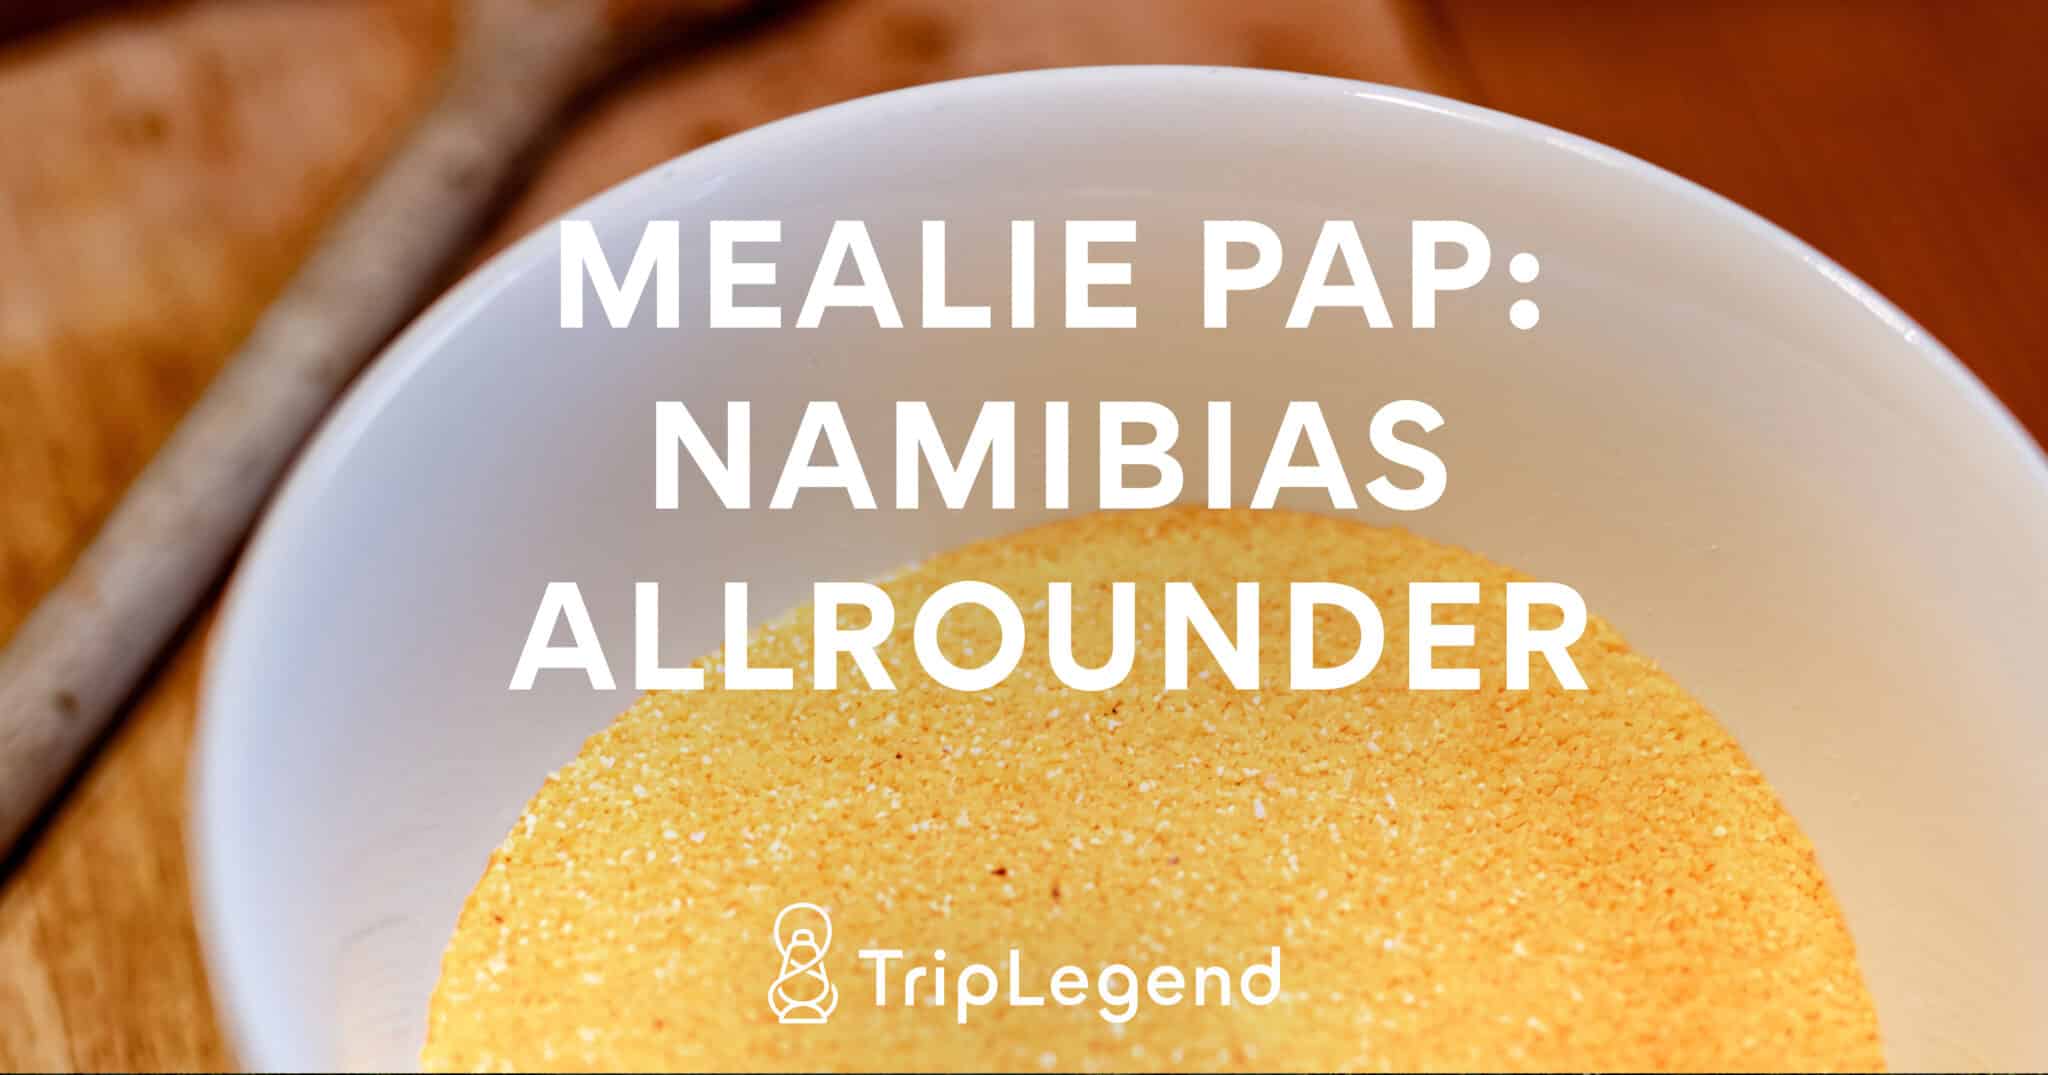 Mealie Pap Le tout-venant de la Namibie Couverture Scaled